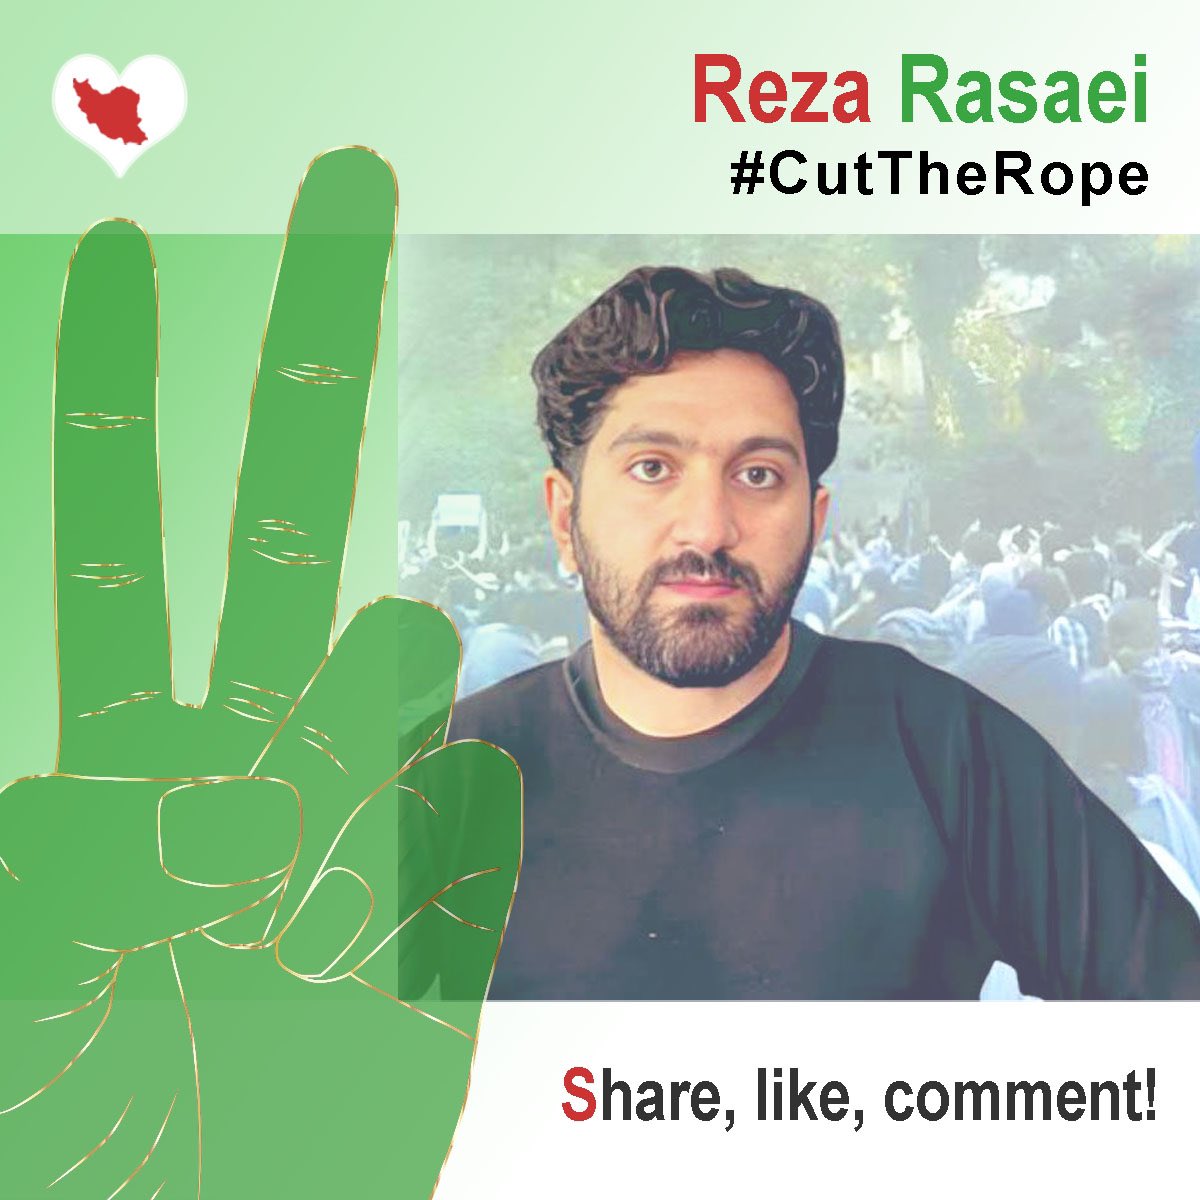 Auch #RezaRasaei wurde als politischer Opponent durch die Unrechtsjustiz der Islamischen Republik Iran zum Tode verurteilt. 

Er und viele andere brauchen uns alle auf der Straße, z. B. in GÖTTINGEN
18/May/2024
14:00
Gänseliesel

Sei solidarisch dabei! 
#StopExecutionsInIran